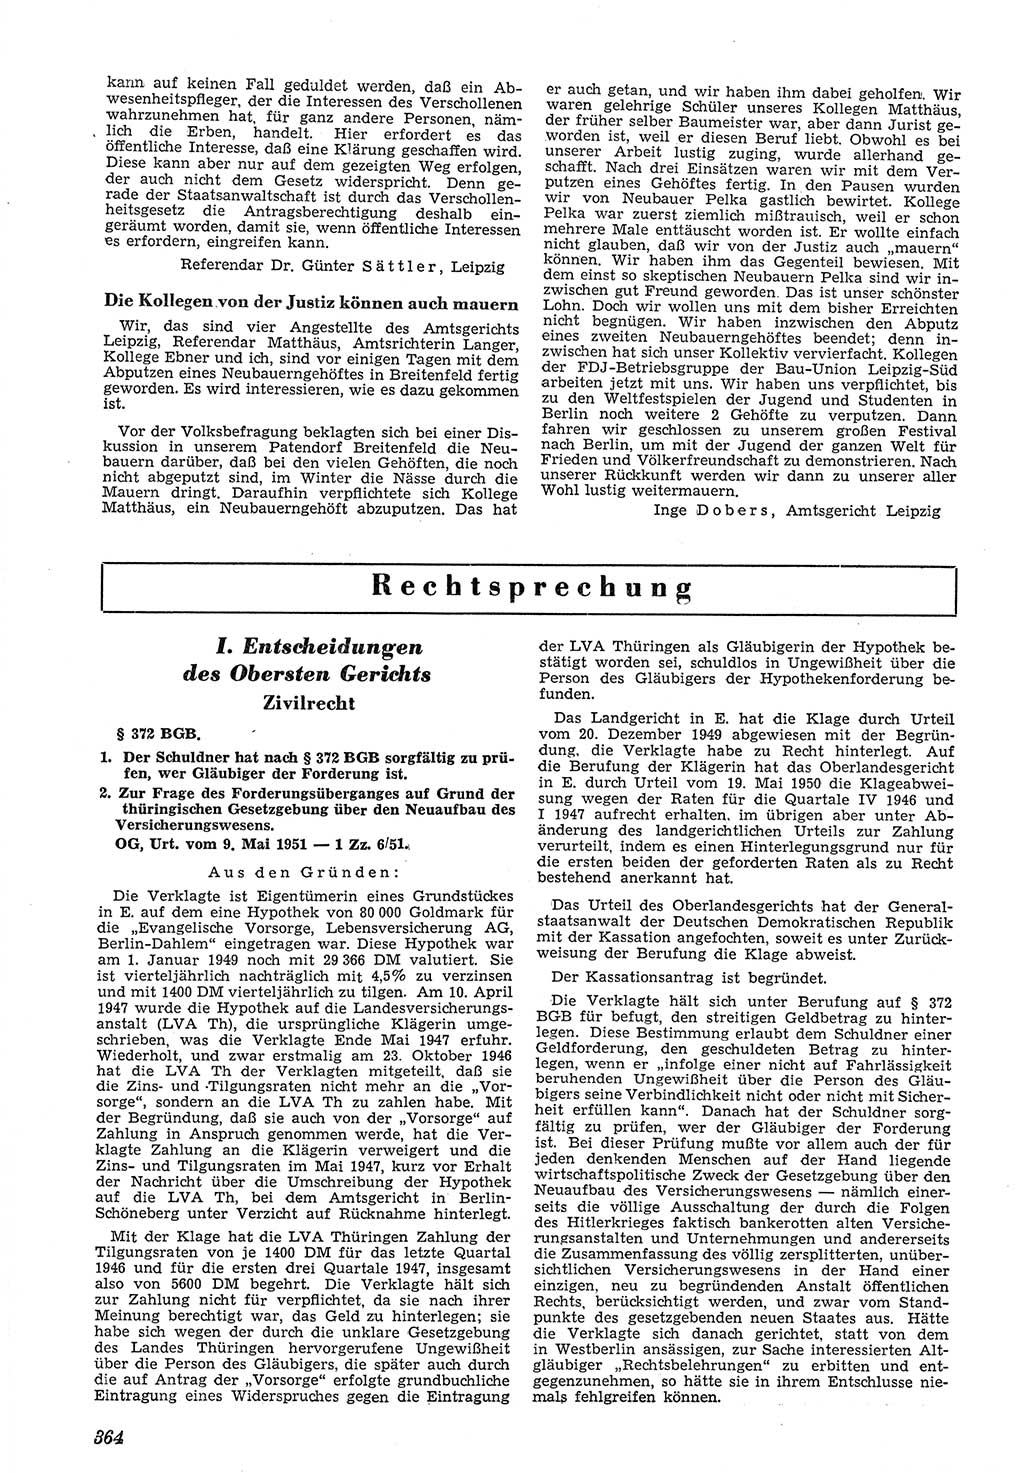 Neue Justiz (NJ), Zeitschrift für Recht und Rechtswissenschaft [Deutsche Demokratische Republik (DDR)], 5. Jahrgang 1951, Seite 364 (NJ DDR 1951, S. 364)